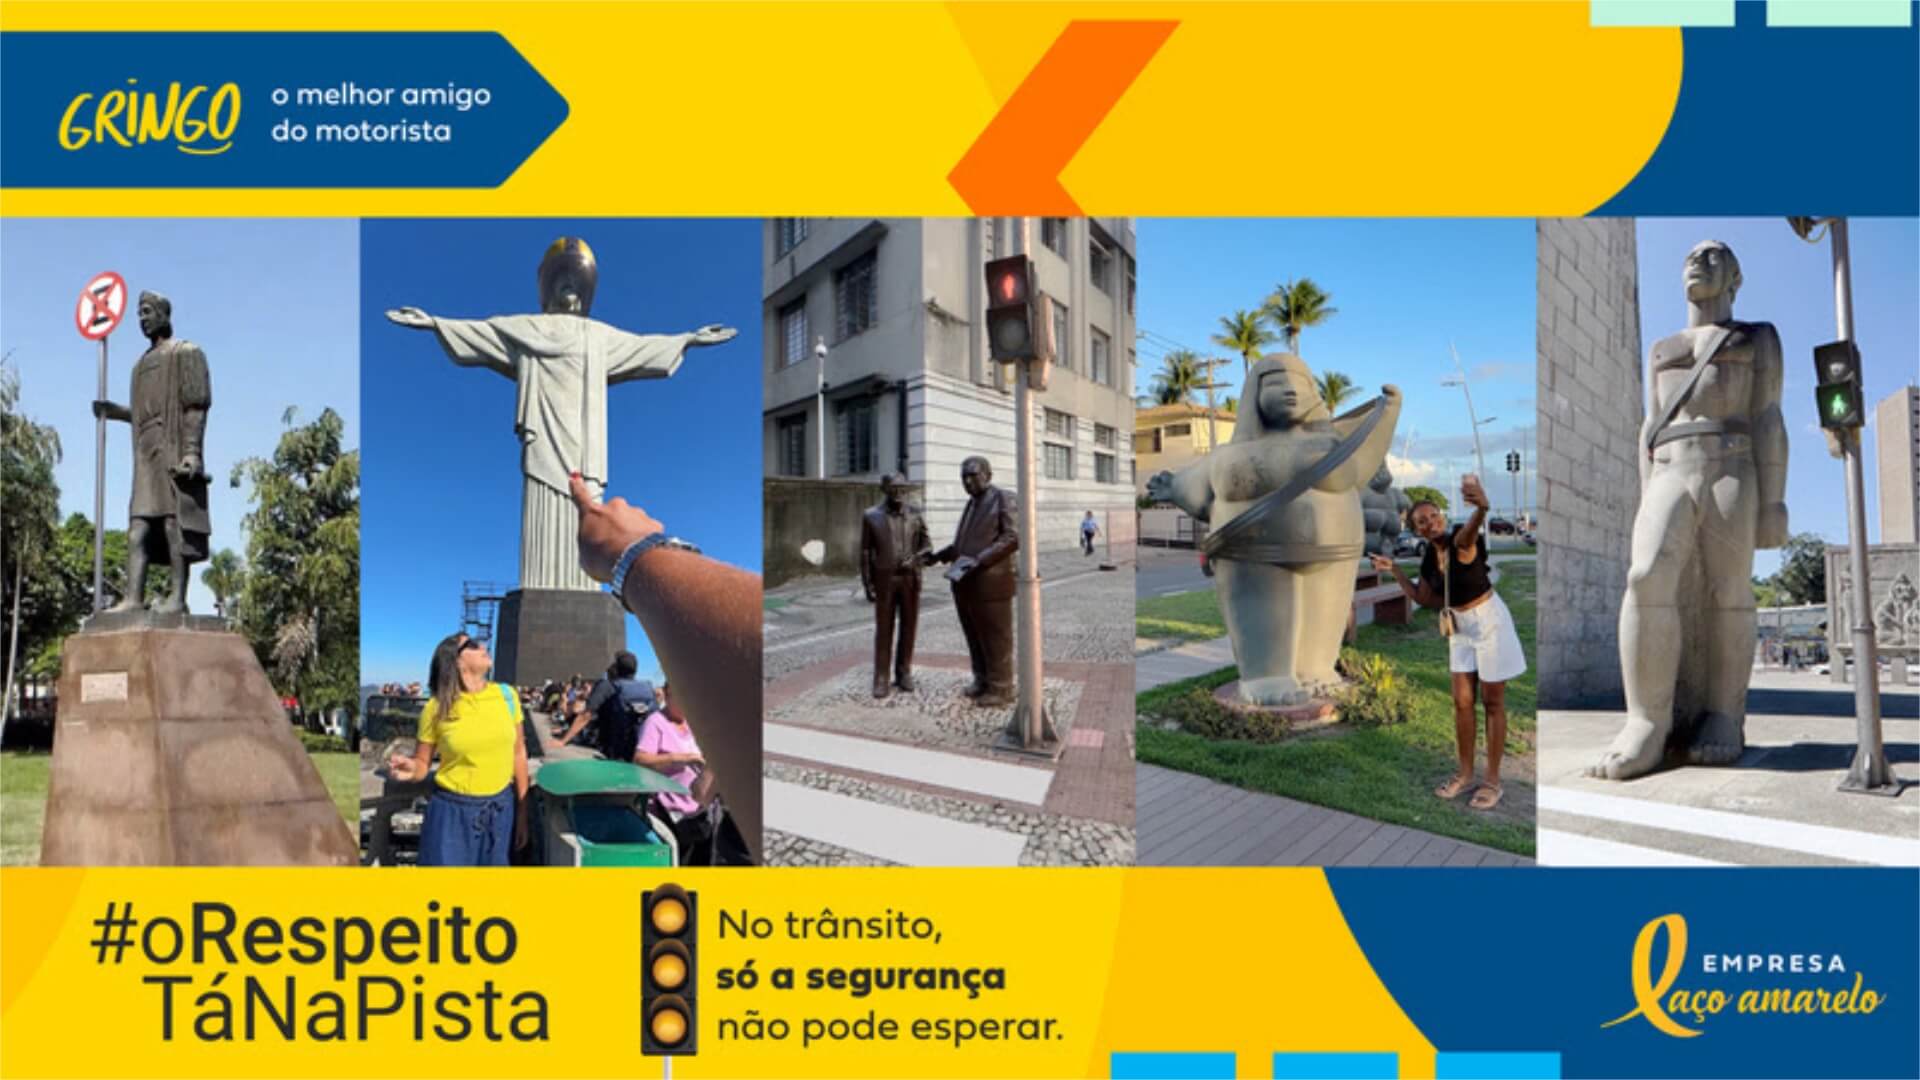 Gringo equipa monumentos brasileiros com itens de proteção